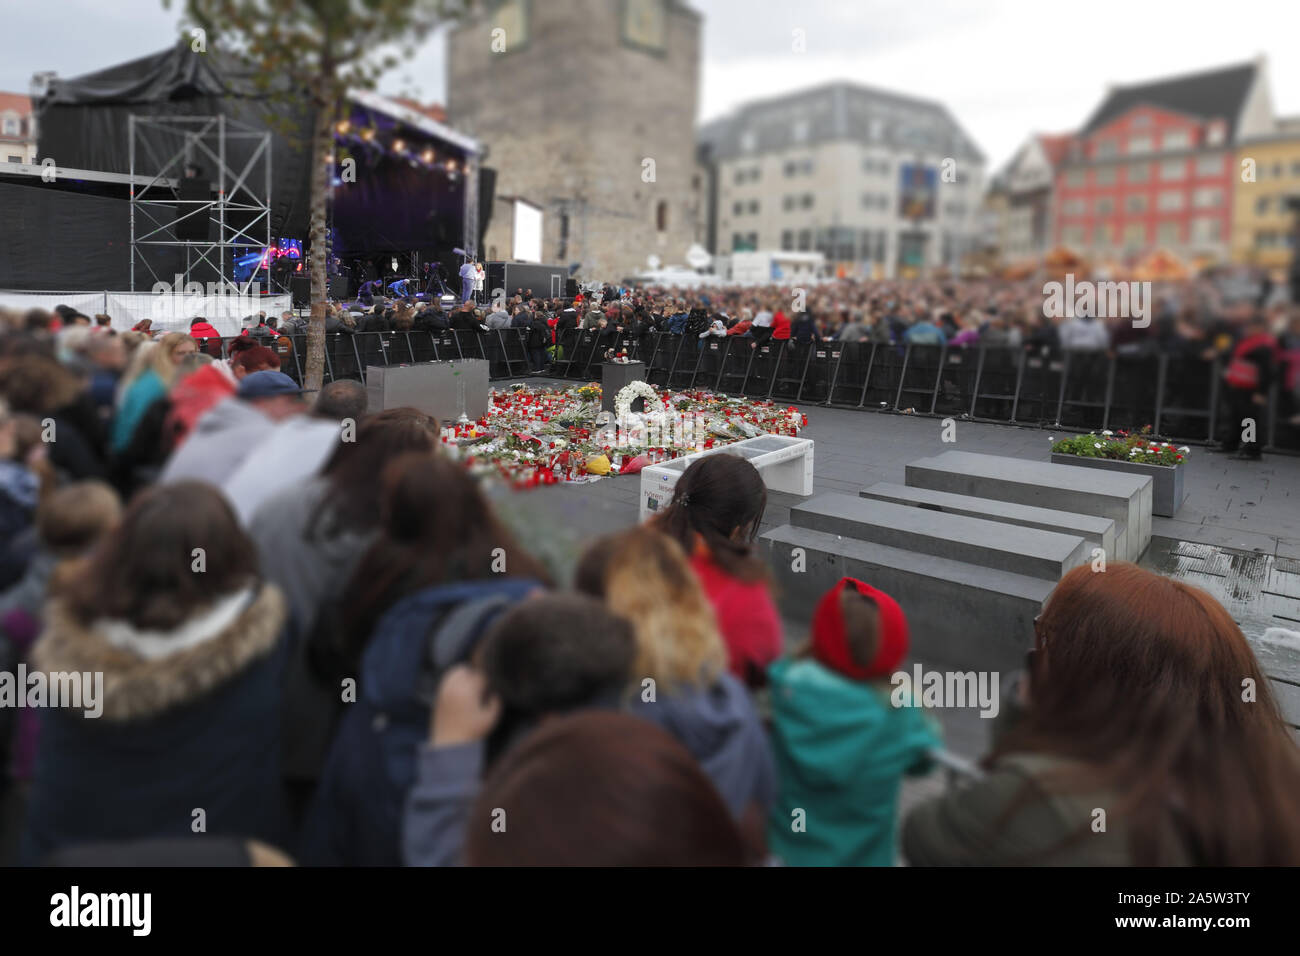 Halle Saale Deutschland am 19 Okt 2019: HalleZusammen Konzert in Gedenken an die Opfer der terroristischen Angriff auf 9 Oct 2019 in Halle (Saale) Stockfoto